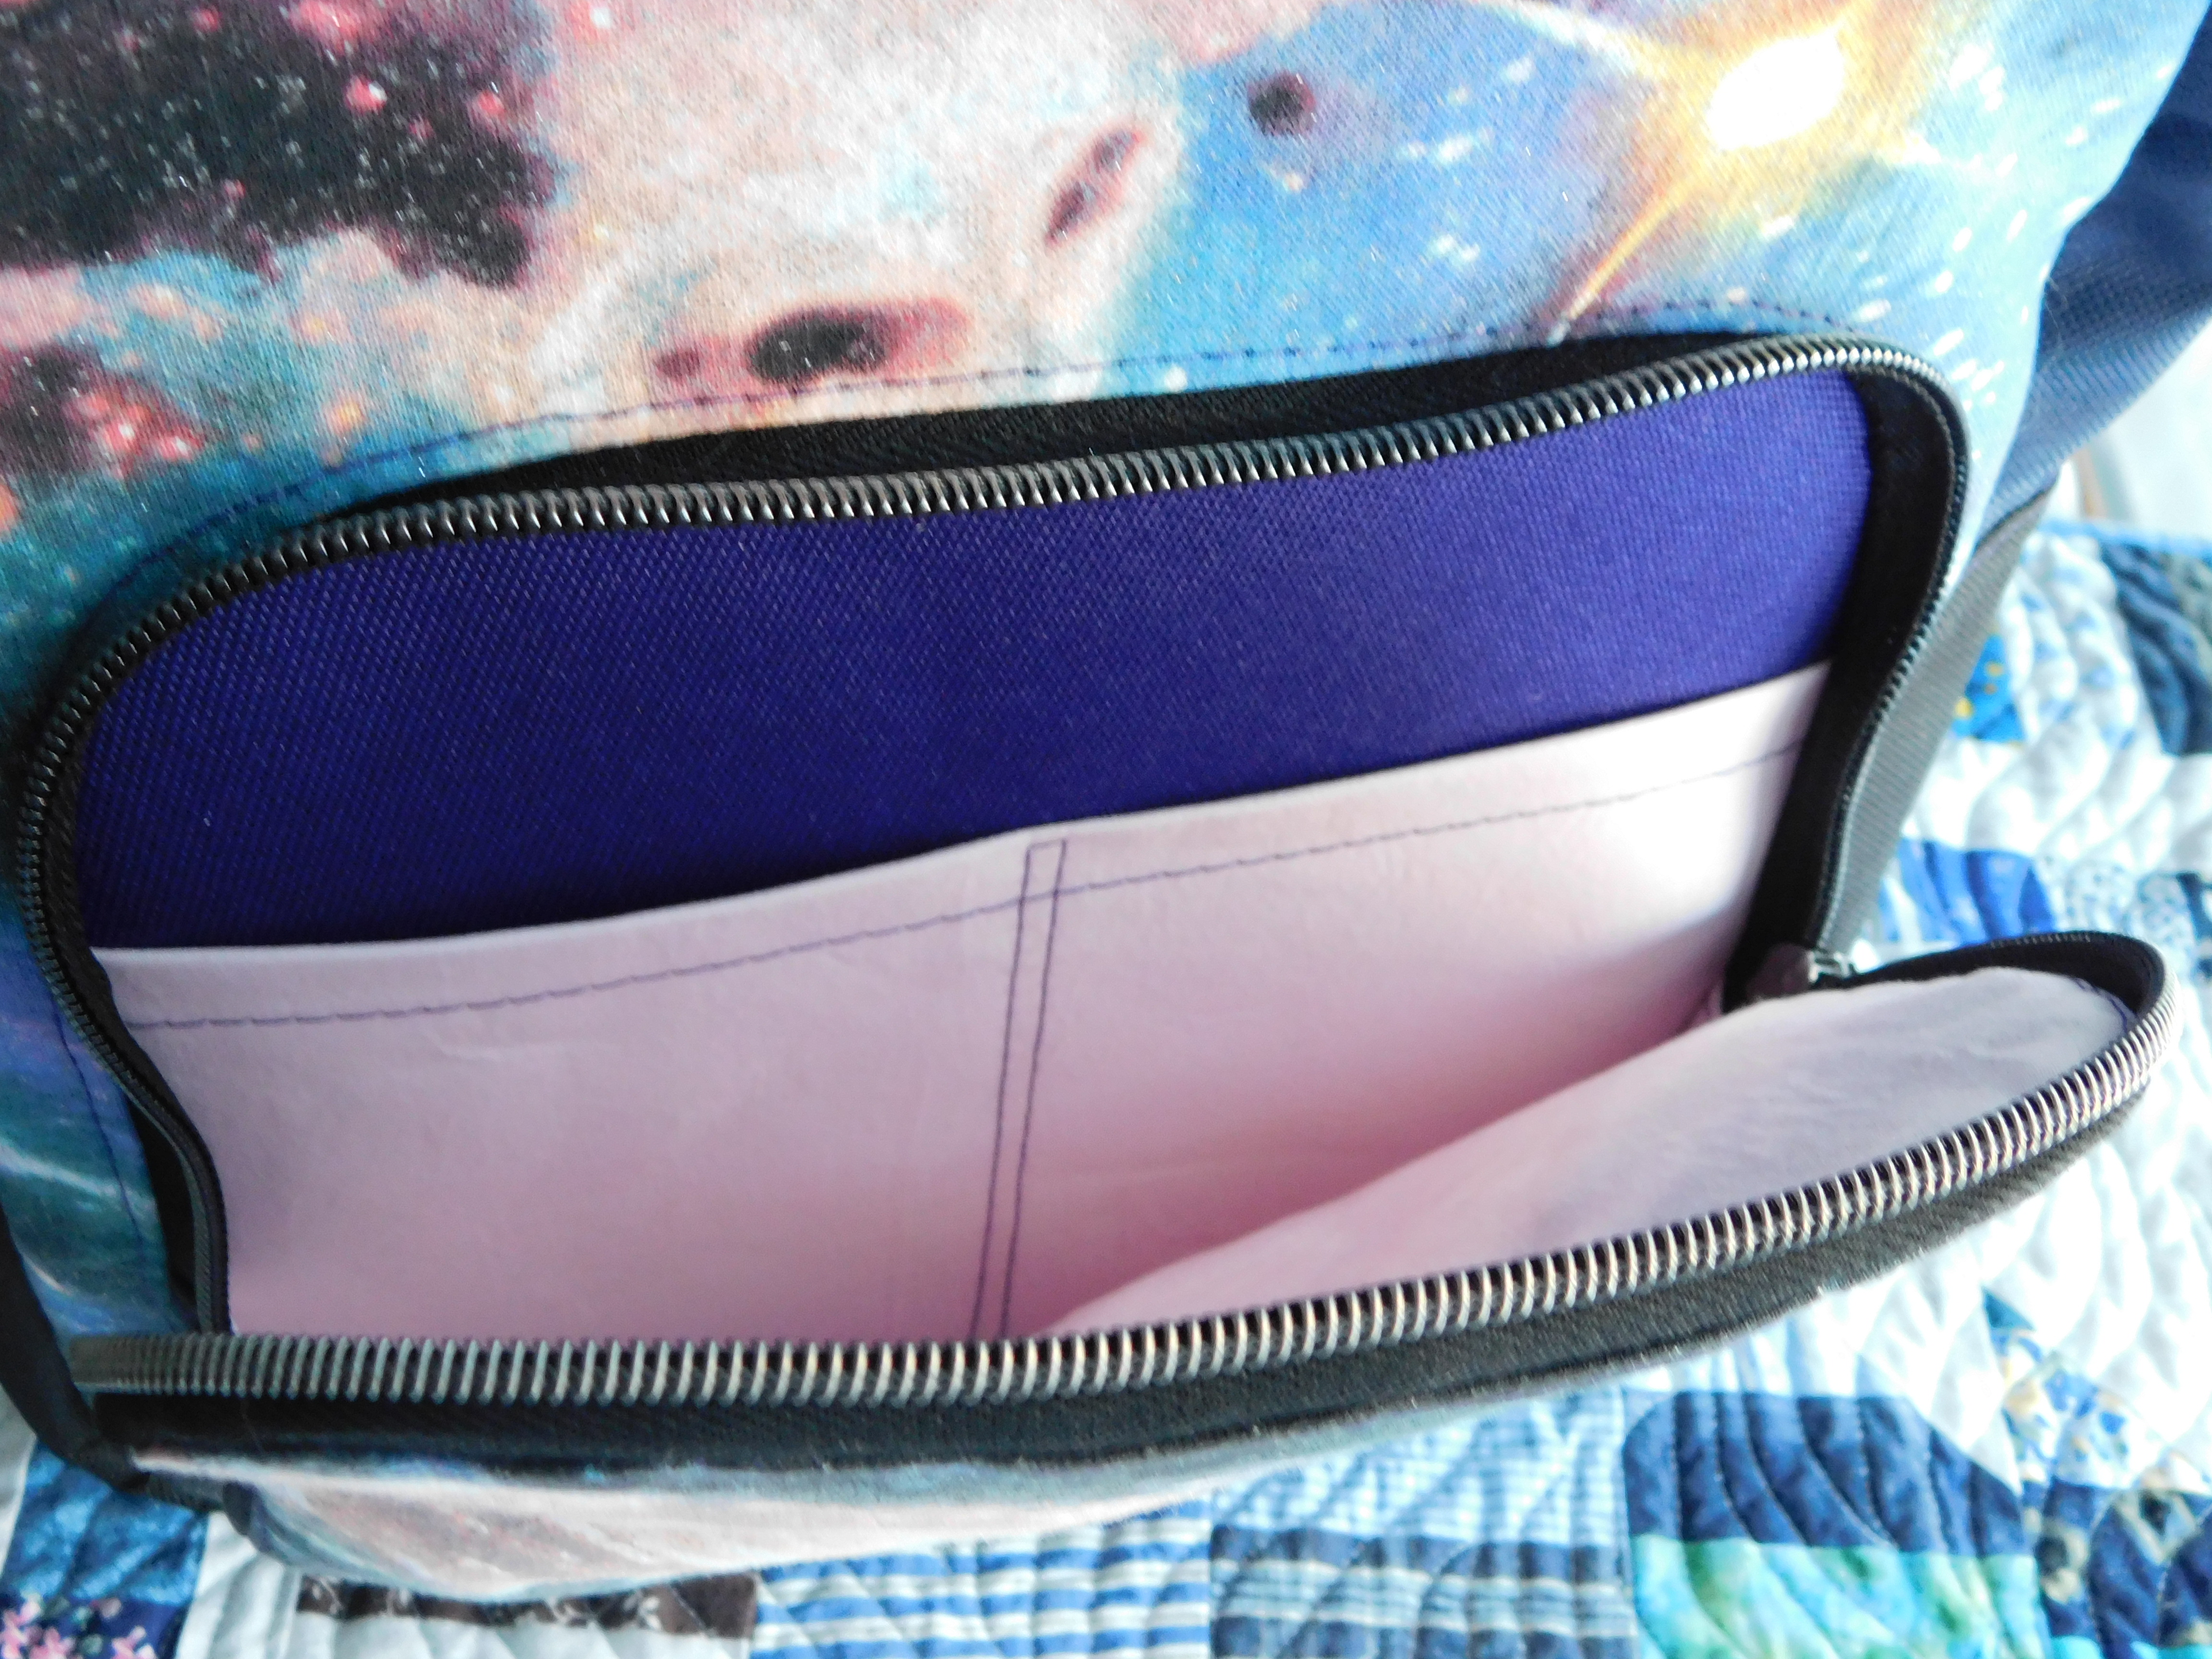 Backpack Front Pocket